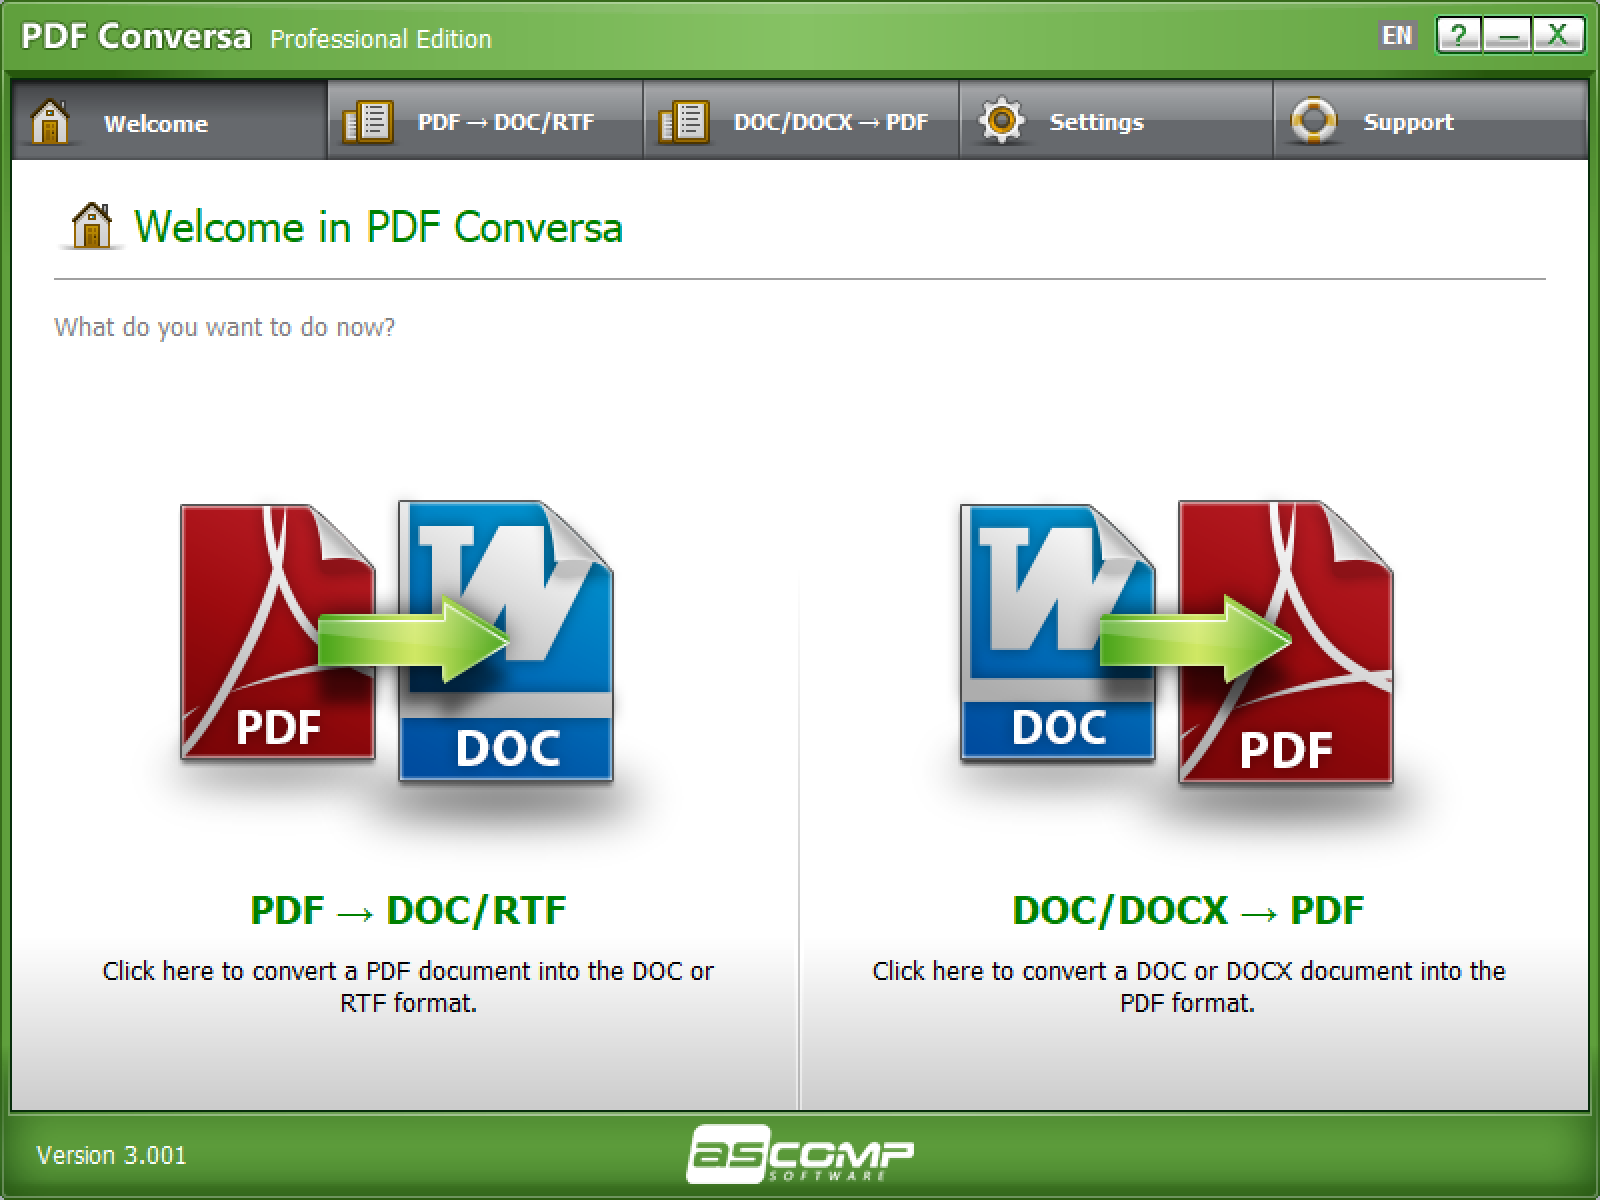 PDF Conversa Pro 3.003 for mac download free